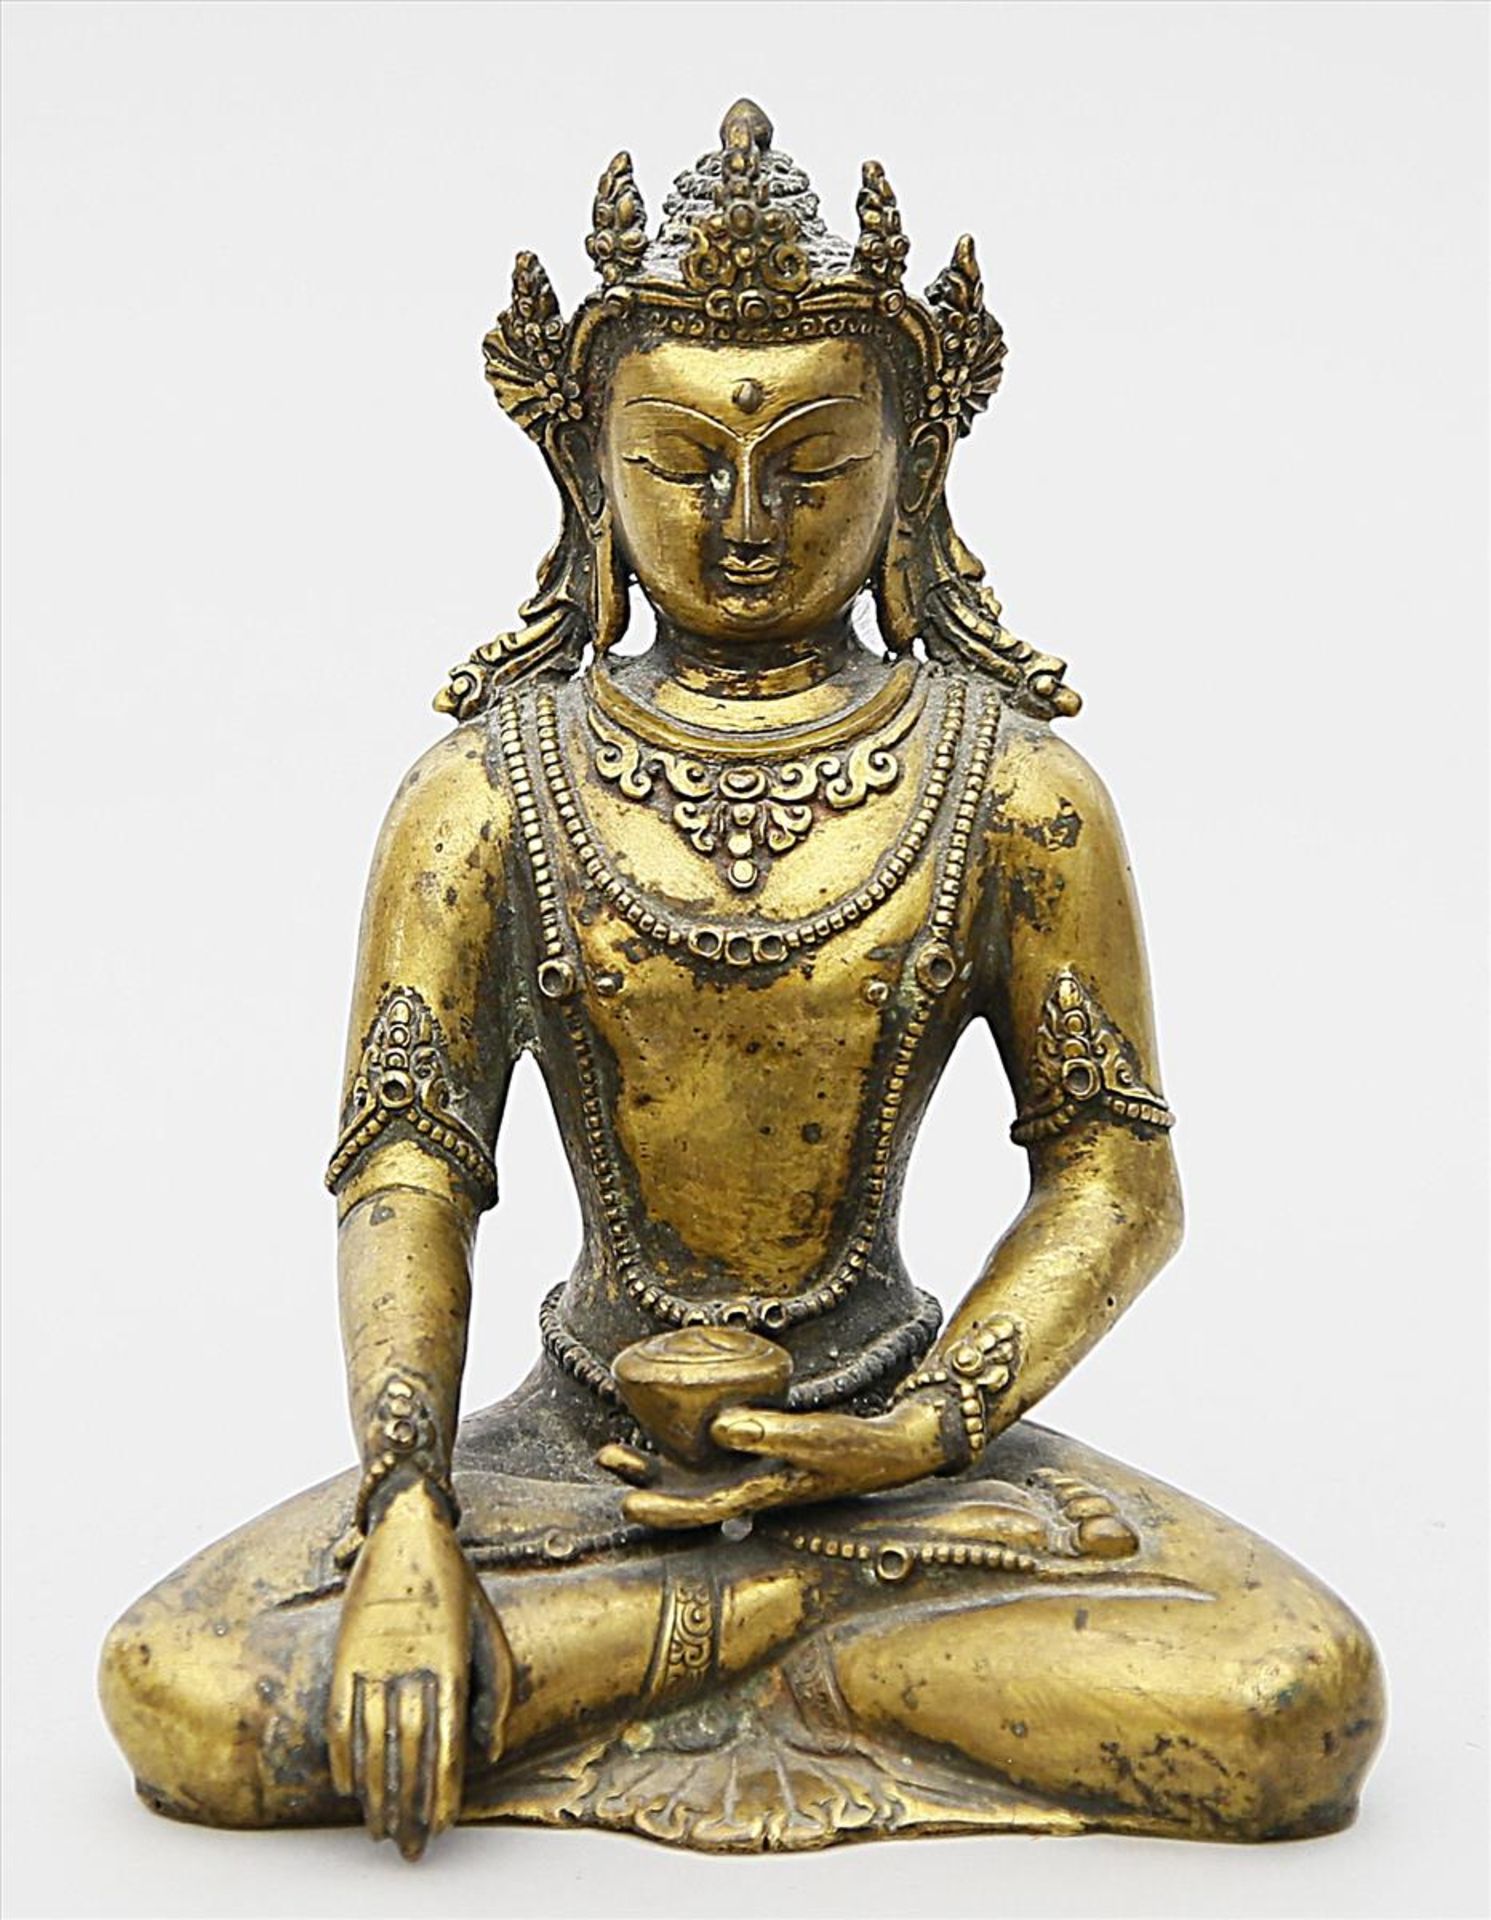 Skulptur des Amitayus.Braun patinierte Bronze. 1.073 g. In Meditationssitz mit Ambrosiaschale, Krone